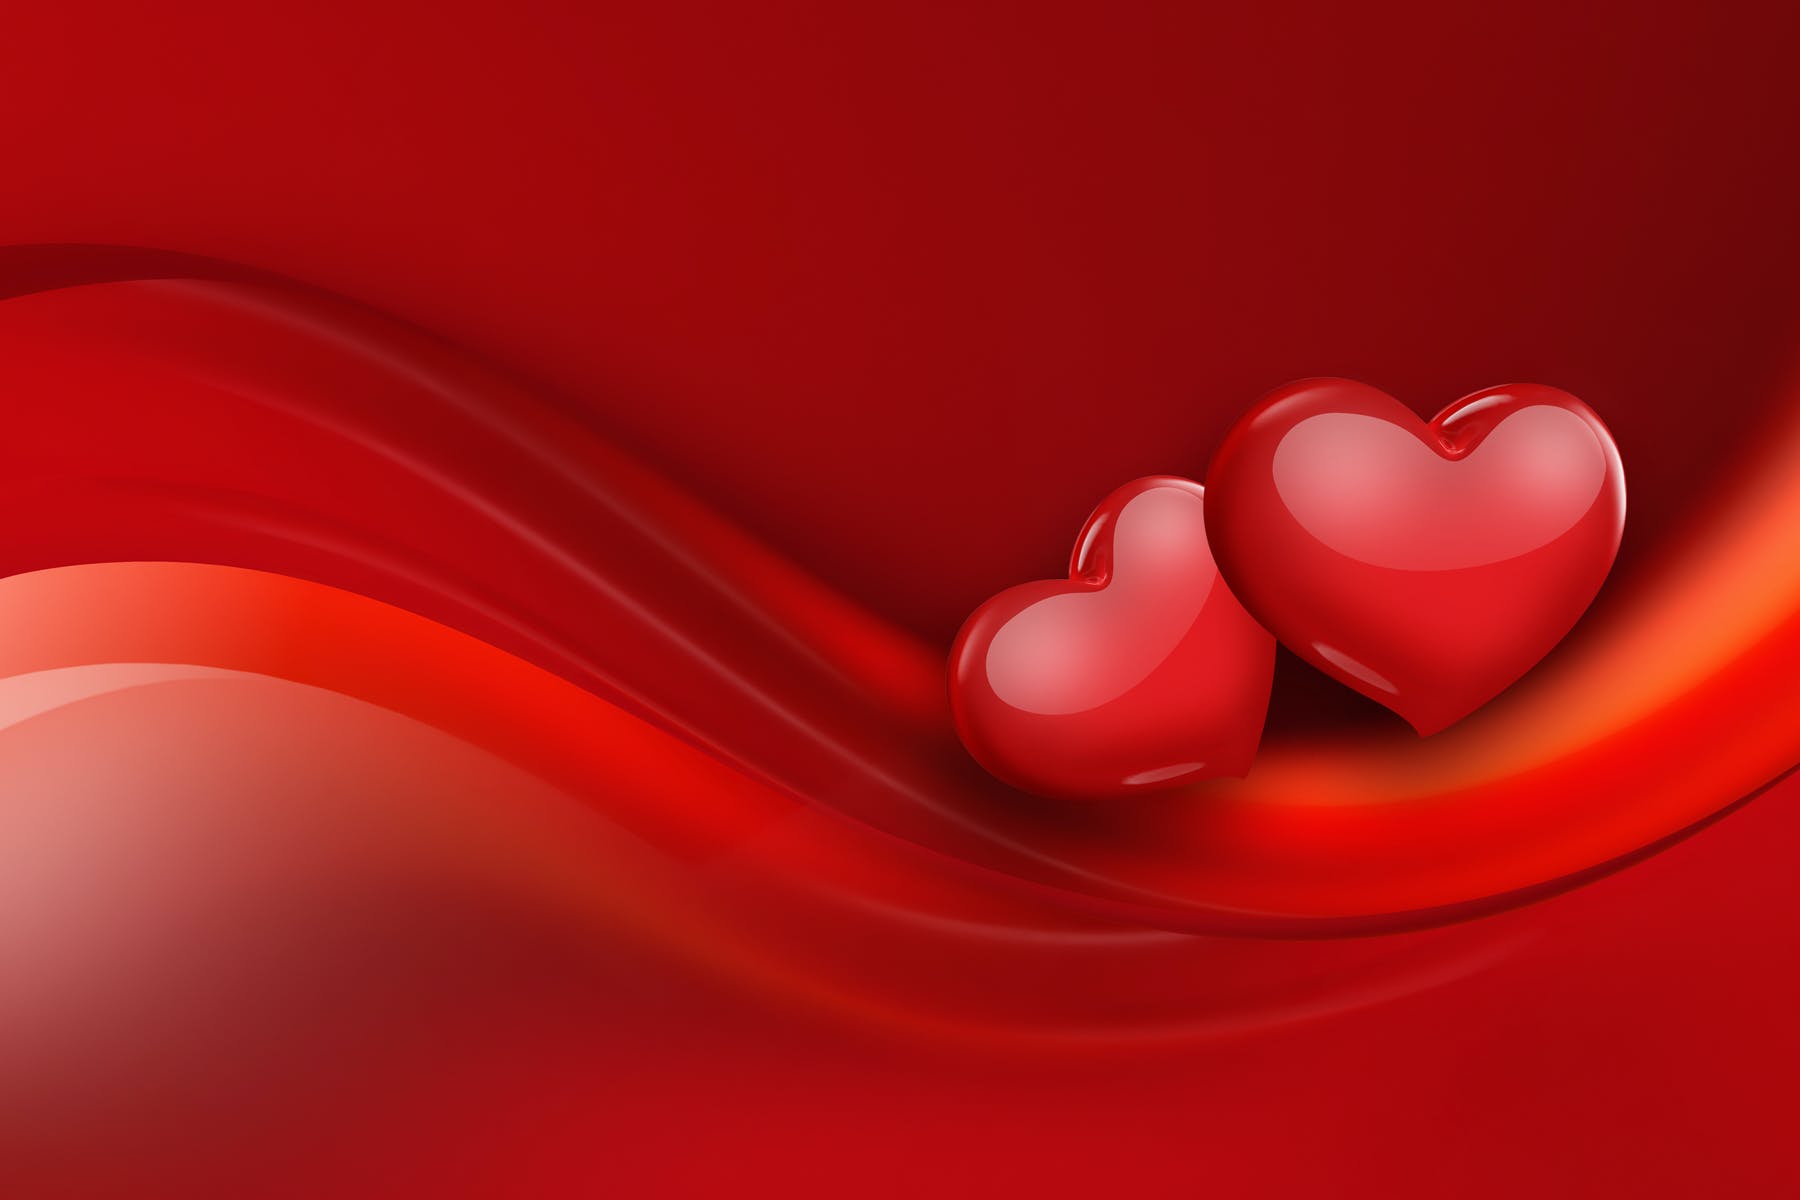 红心爱心红色背景情人节素材v3 Red Hearts On A Red Background APP UI 第1张